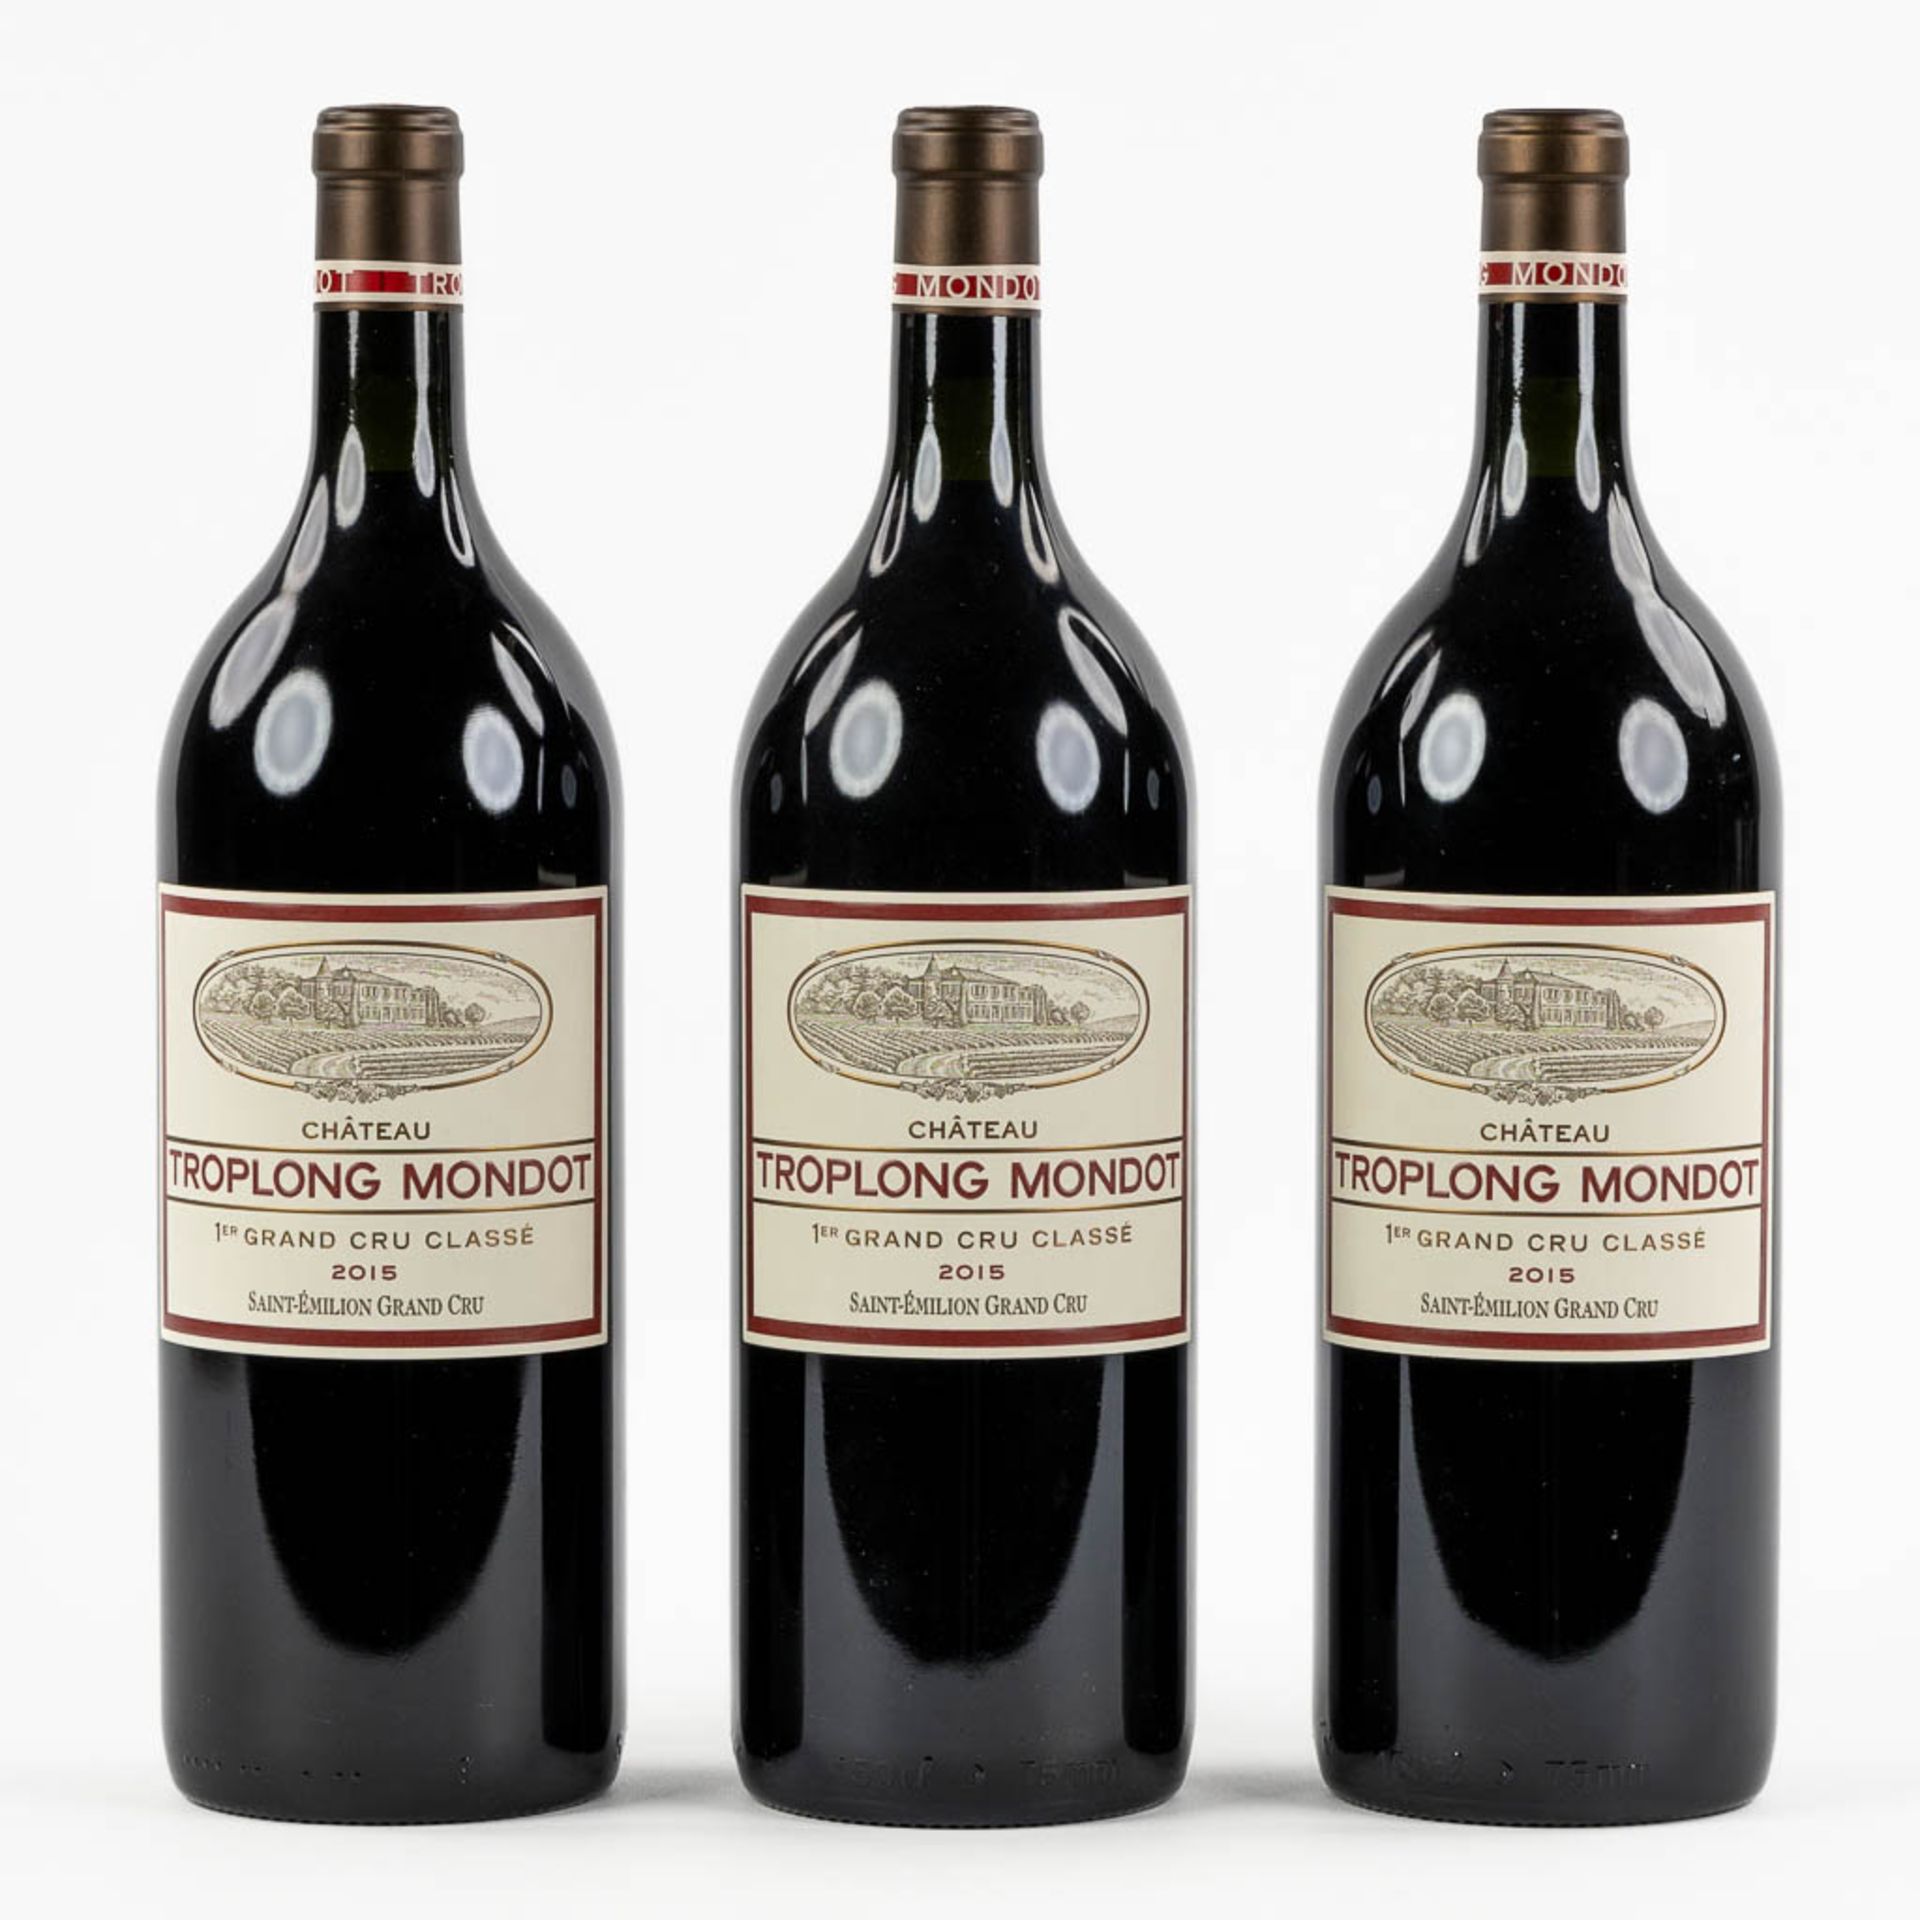 2015 Château Troplong Mondot (magnum), 3 bottles.